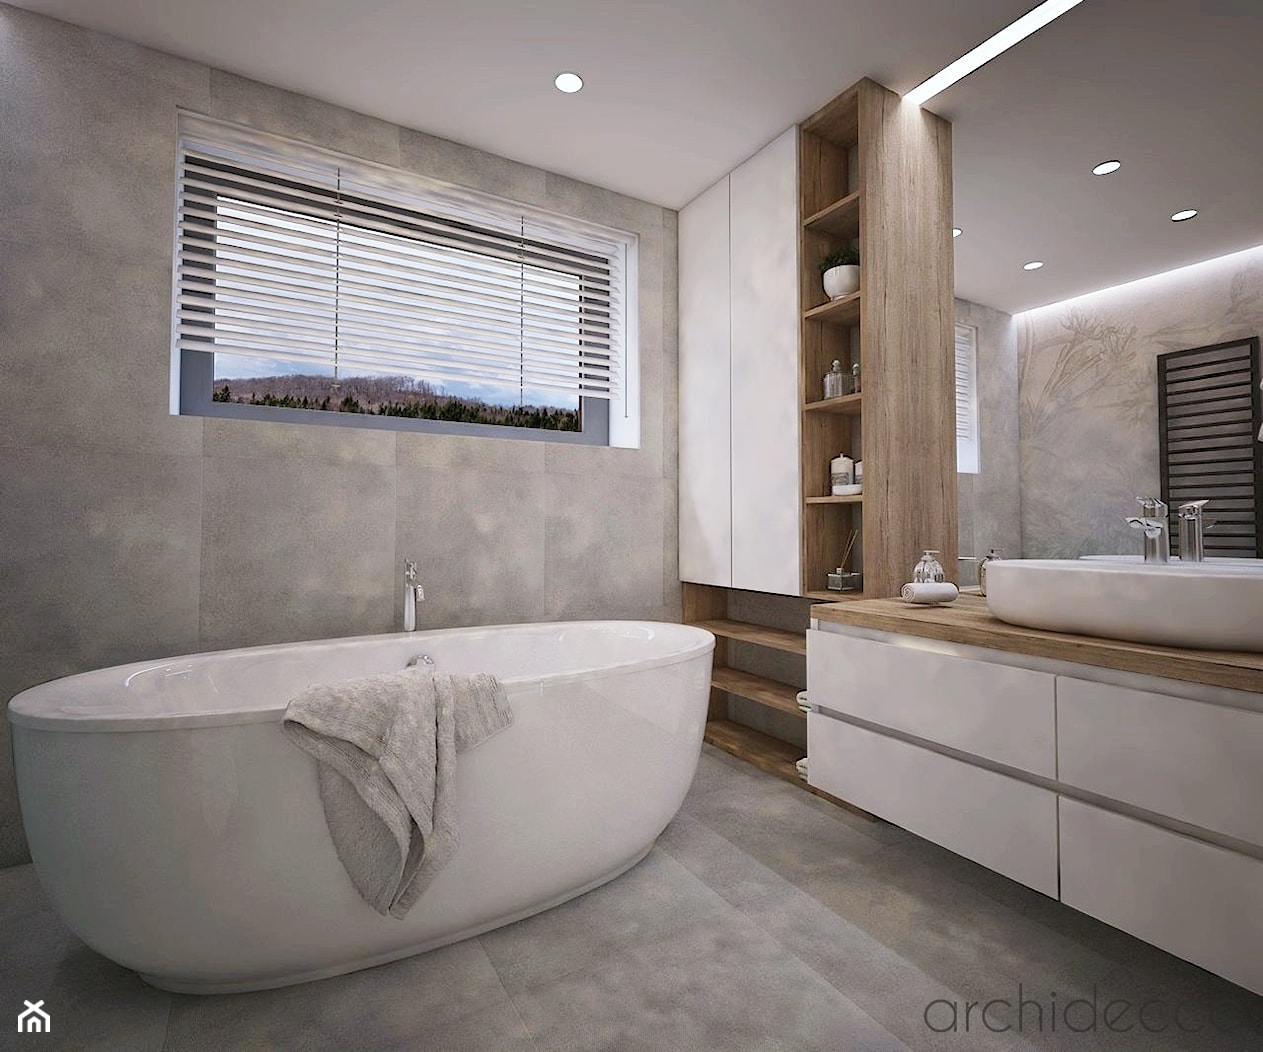 łazienka z wolnostojącą wanną - zdjęcie od archidecco - Homebook